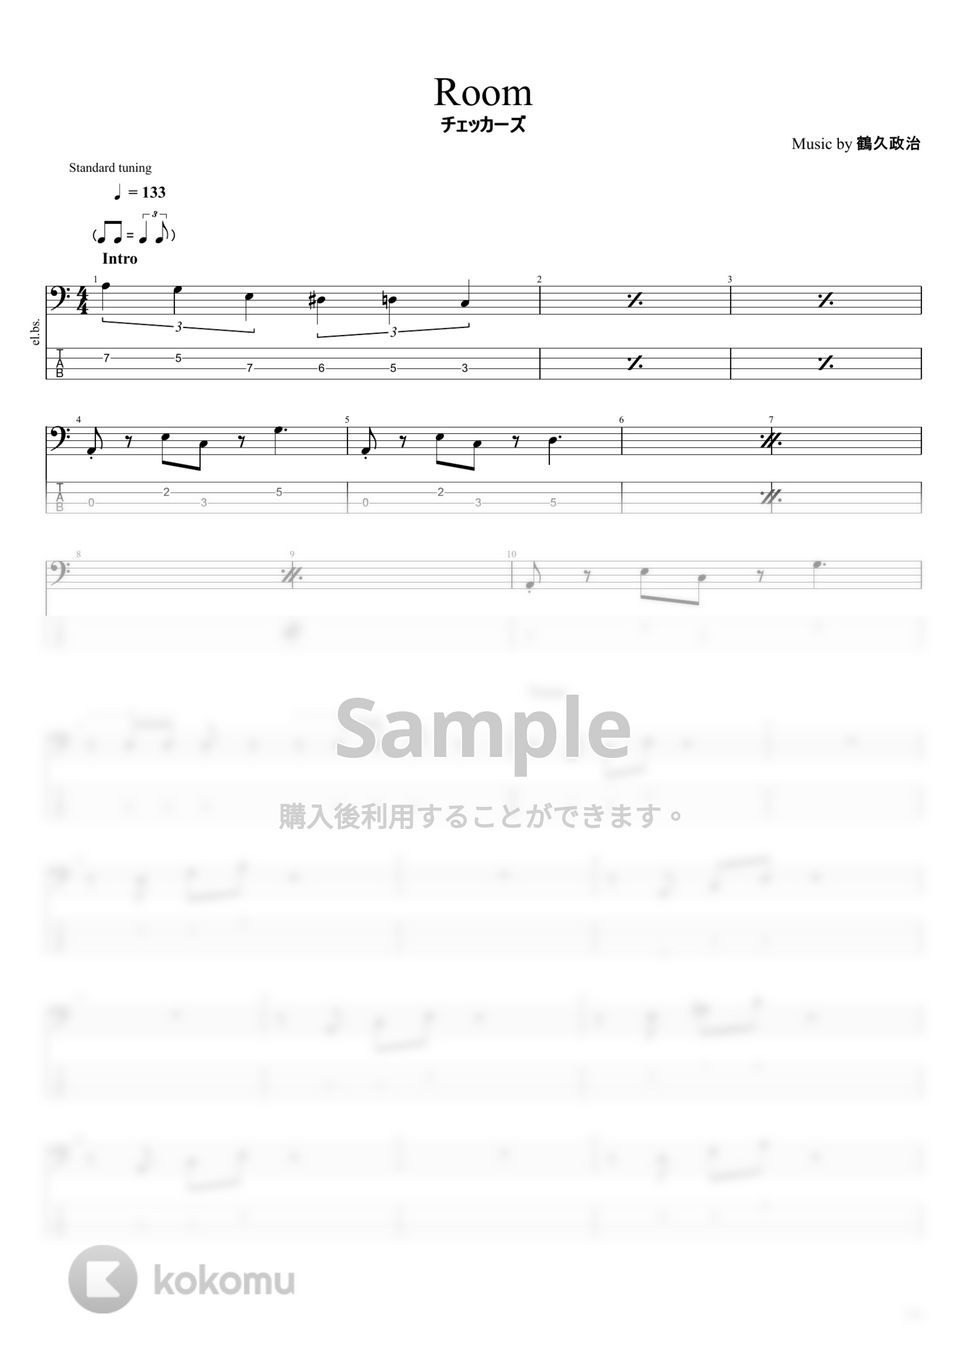 チェッカーズ - チェッカーズ楽譜集 (10曲) by まっきん